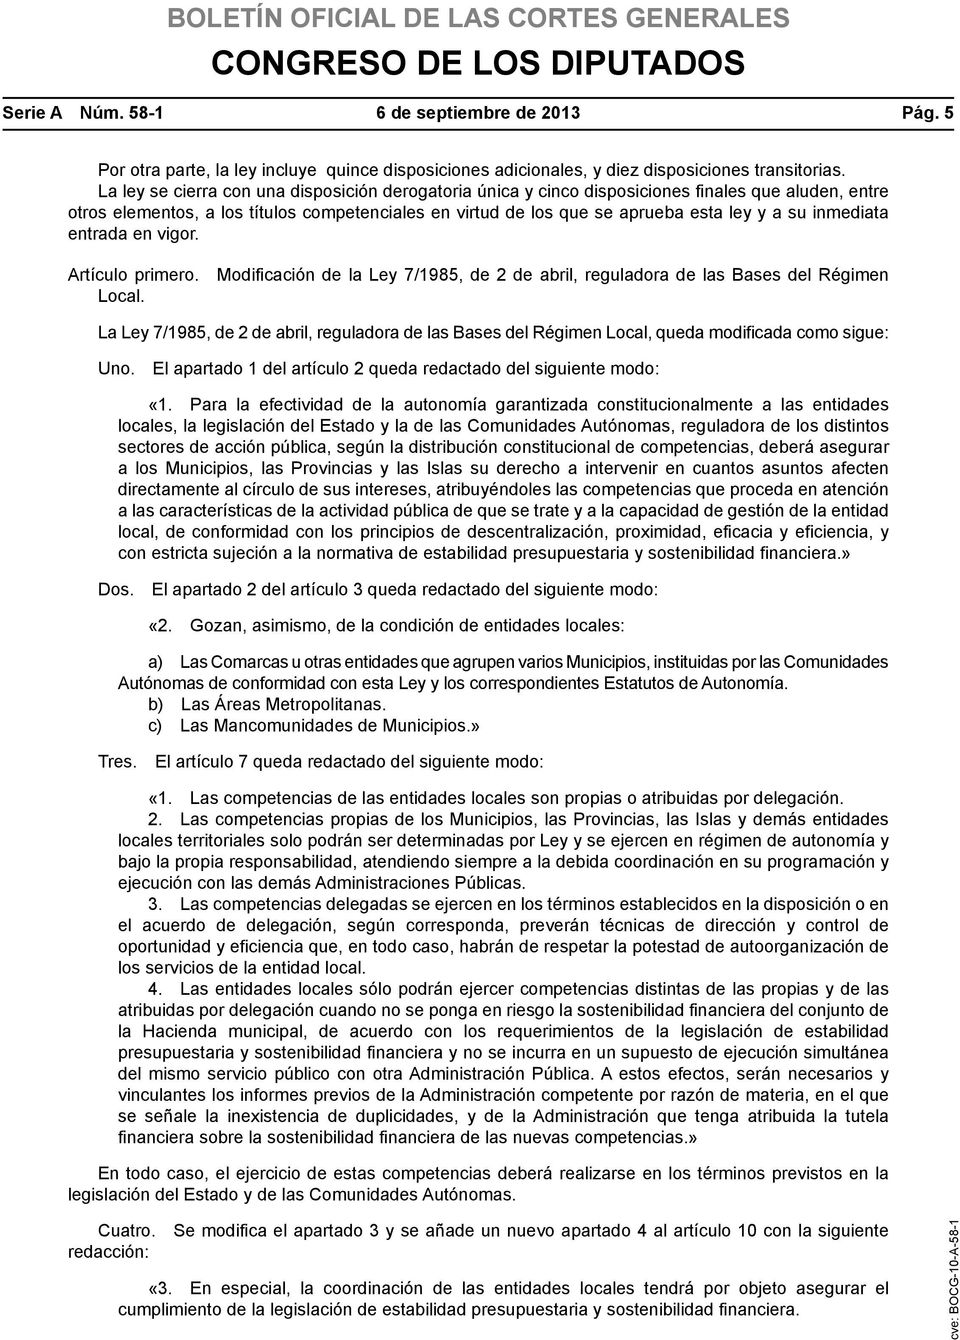 inmediata entrada en vigor. Artículo primero. Modificación de la Ley 7/1985, de 2 de abril, reguladora de las Bases del Régimen Local.